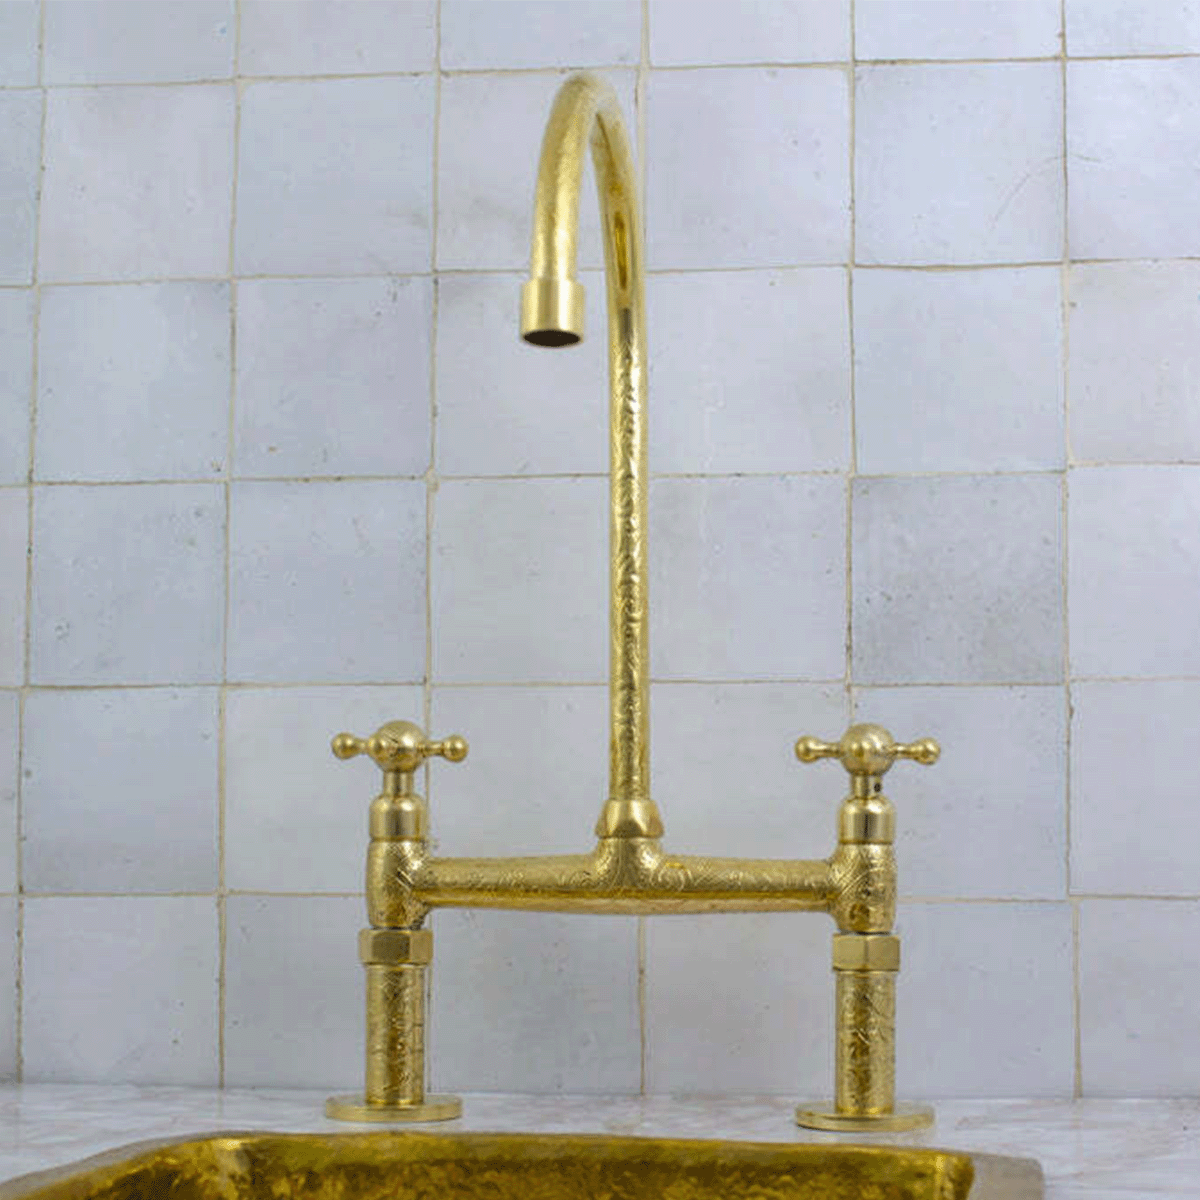 Gold faucet in front of white tile backsplash.